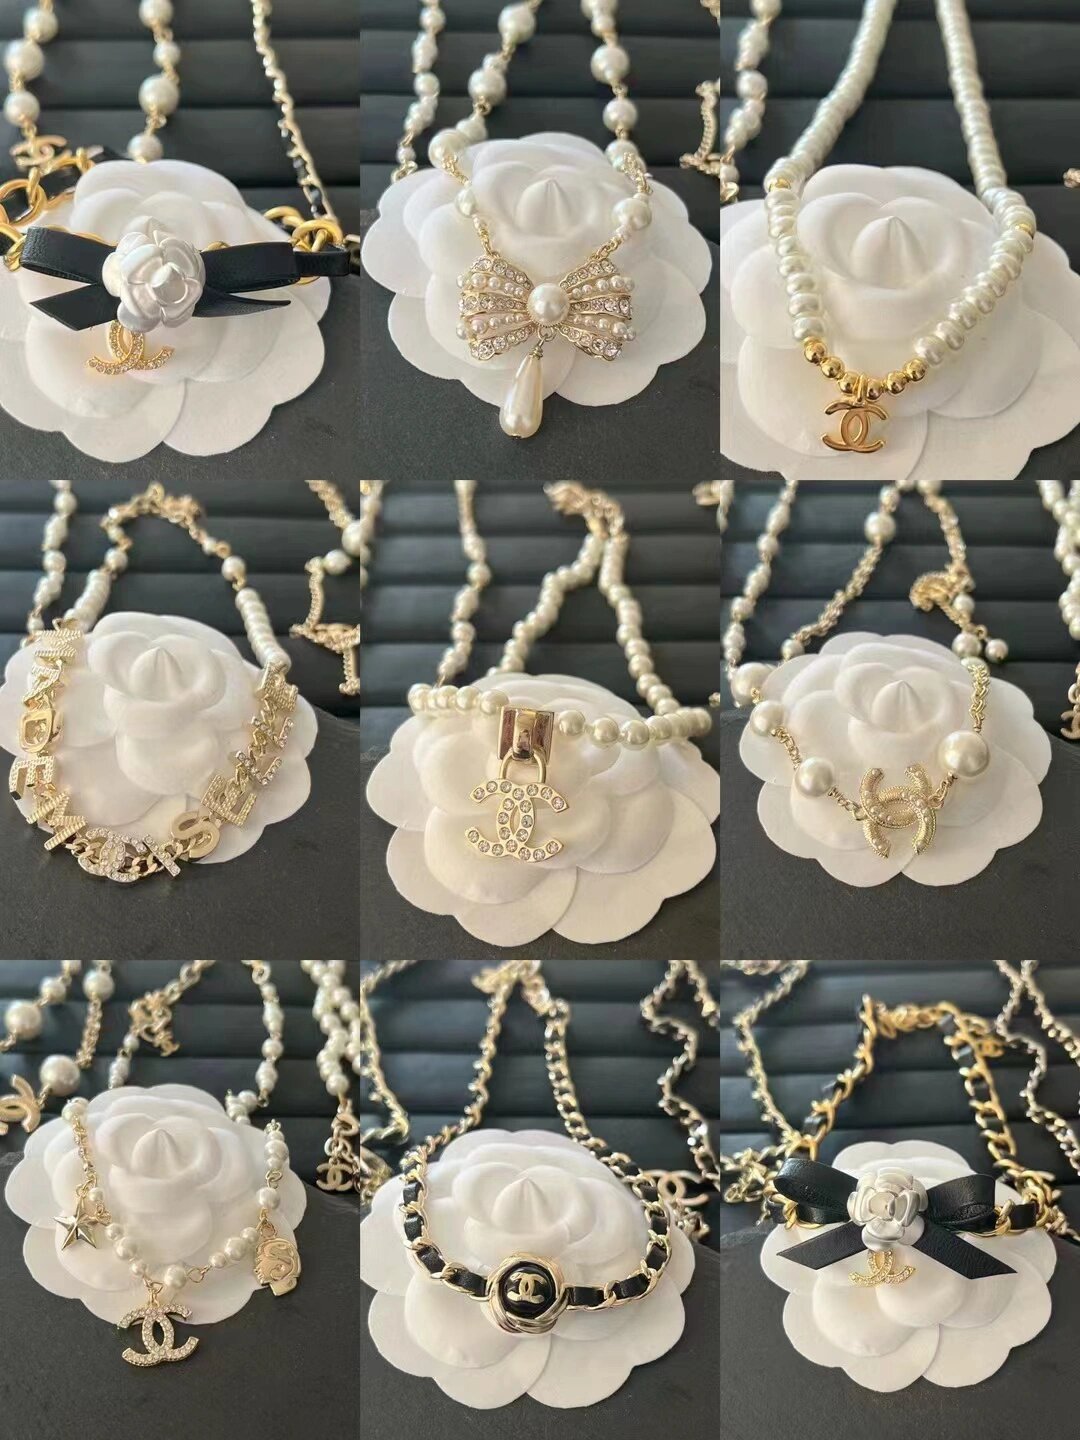 今天还分享96615款chanel香奈儿经典珍珠项链